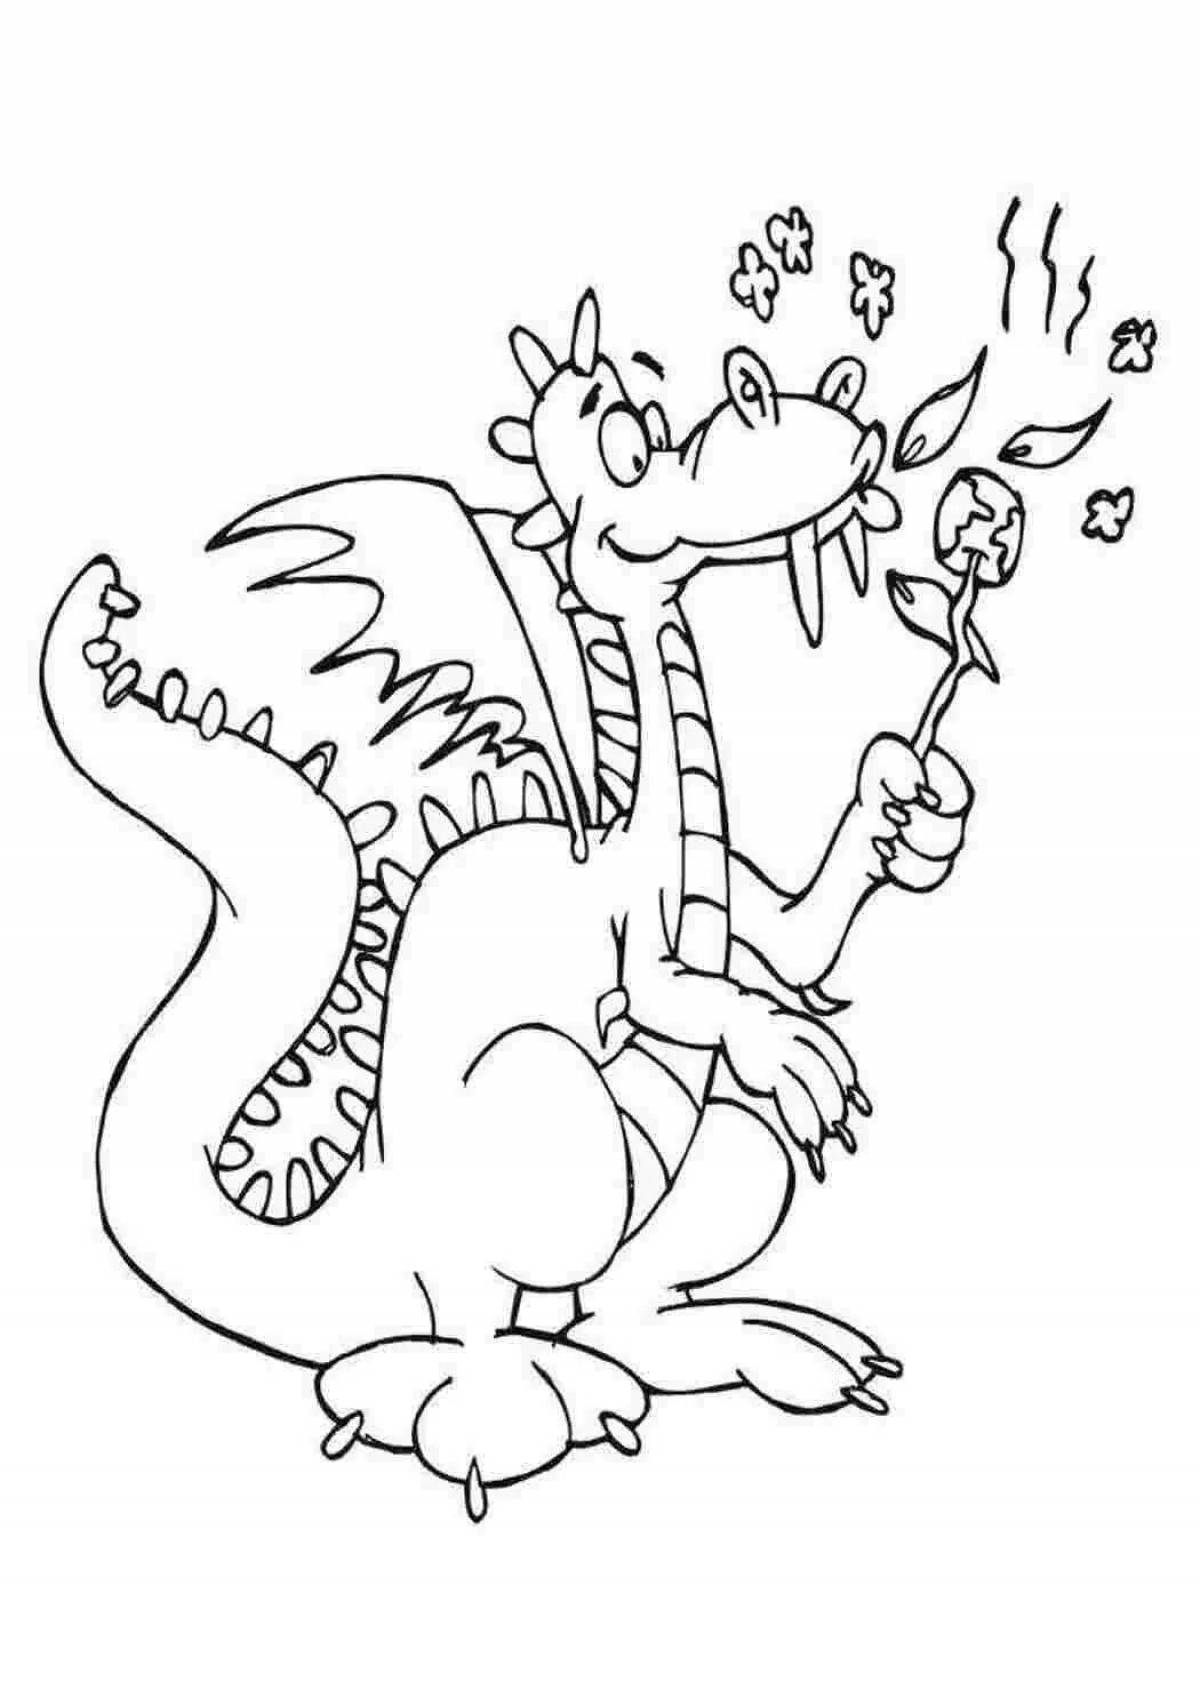 Жирная раскраска дракон для детей